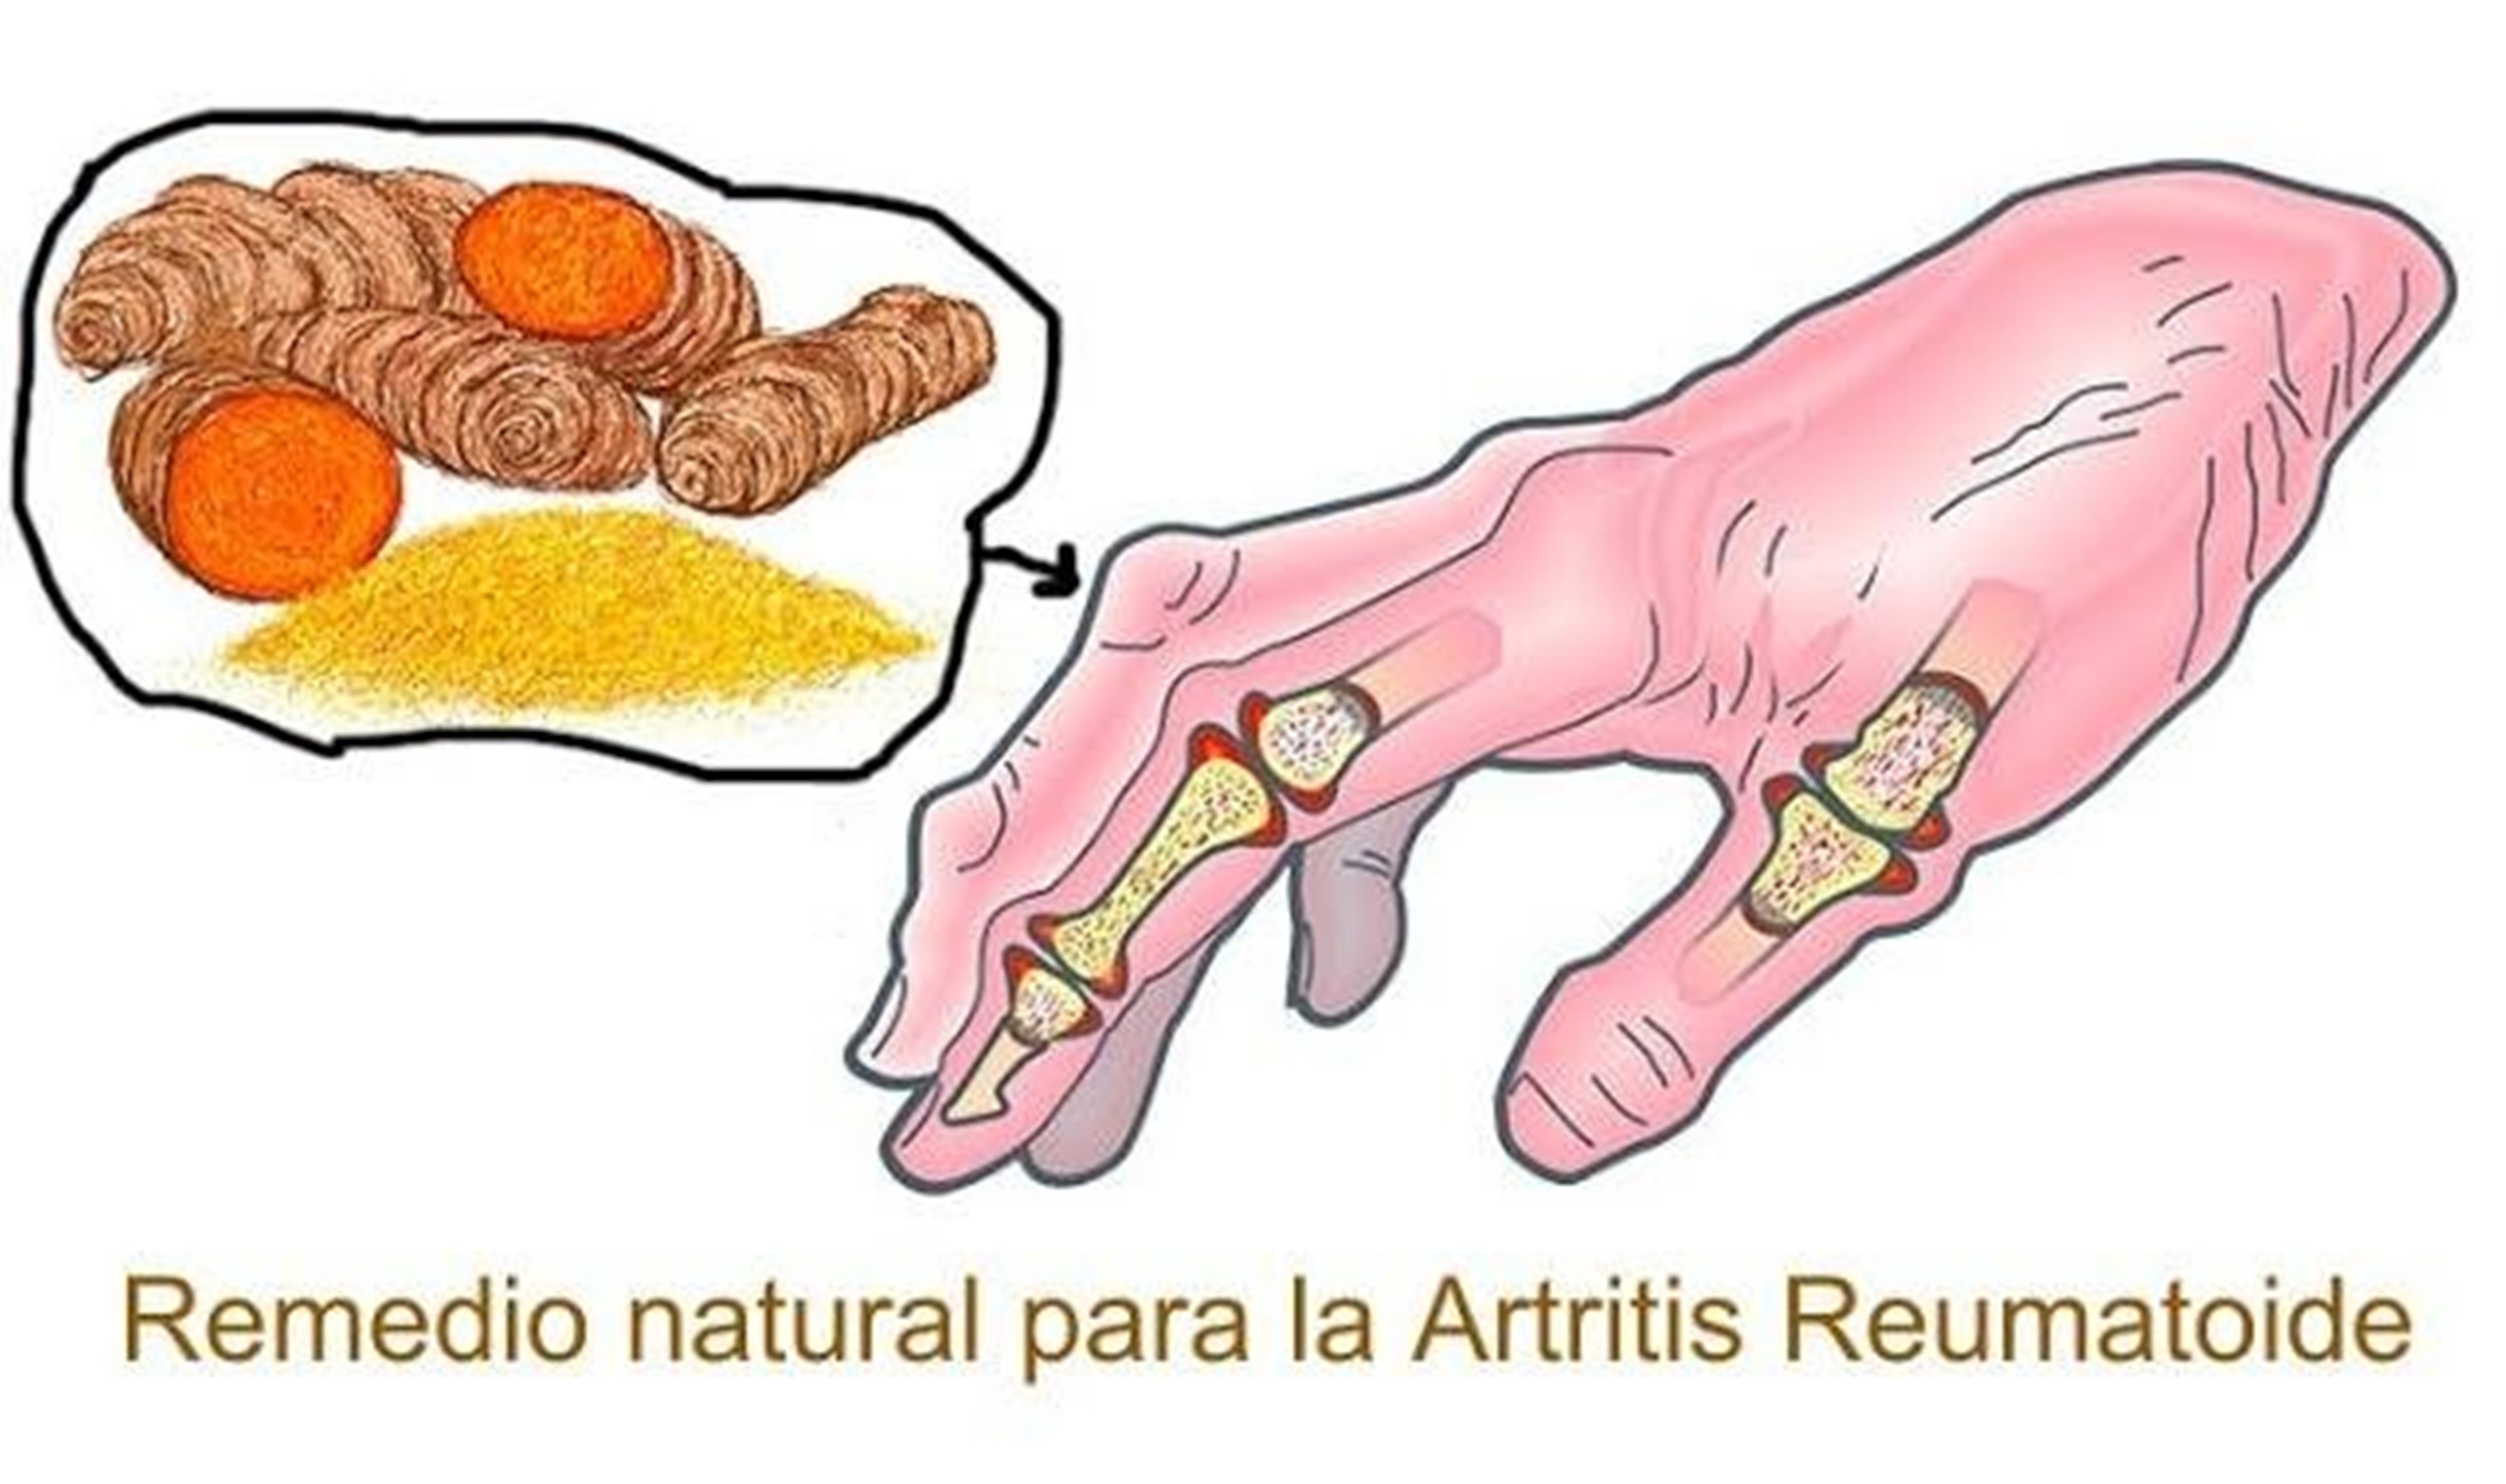  Artritis: Los 4 mejores remedios naturales para la artritis reumatoide